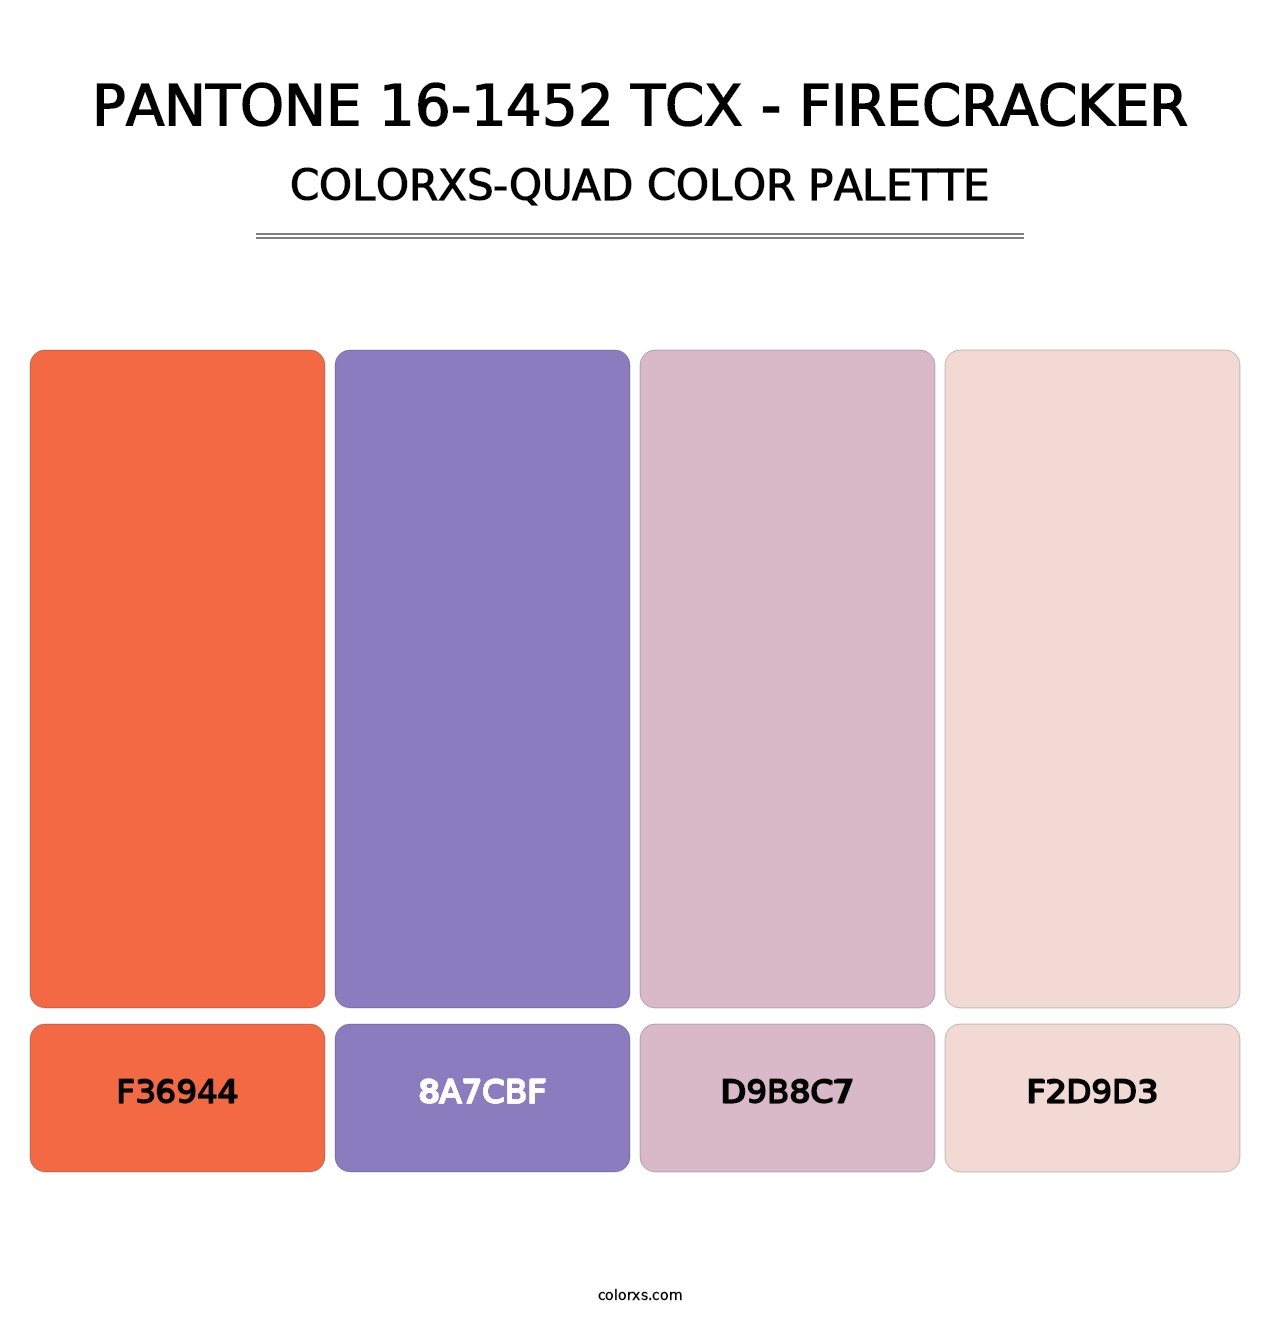 PANTONE 16-1452 TCX - Firecracker - Colorxs Quad Palette